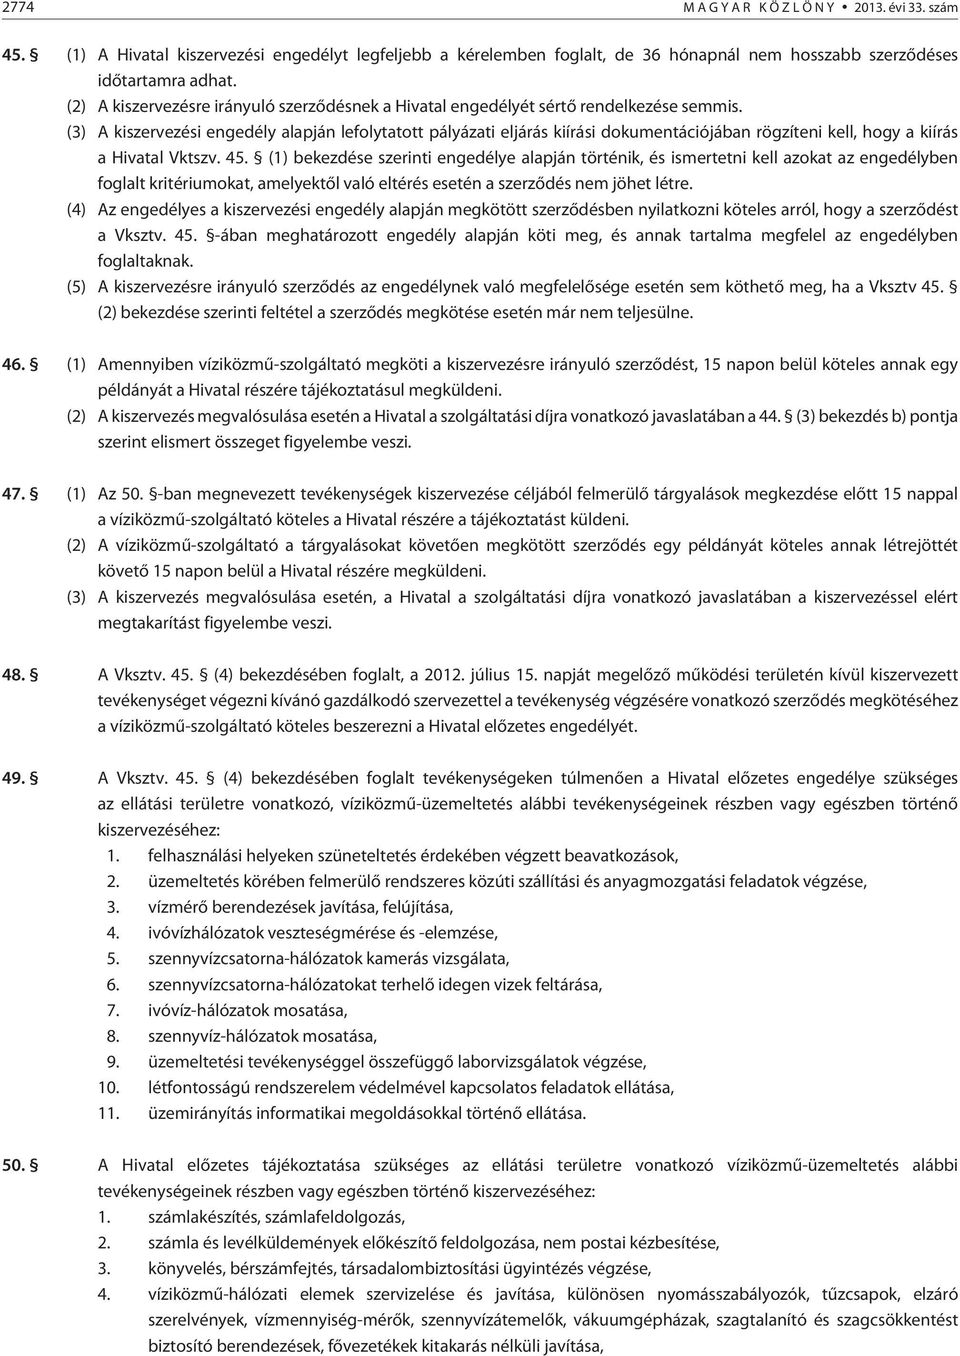 (3) A kiszervezési engedély alapján lefolytatott pályázati eljárás kiírási dokumentációjában rögzíteni kell, hogy a kiírás a Hivatal Vktszv. 45.